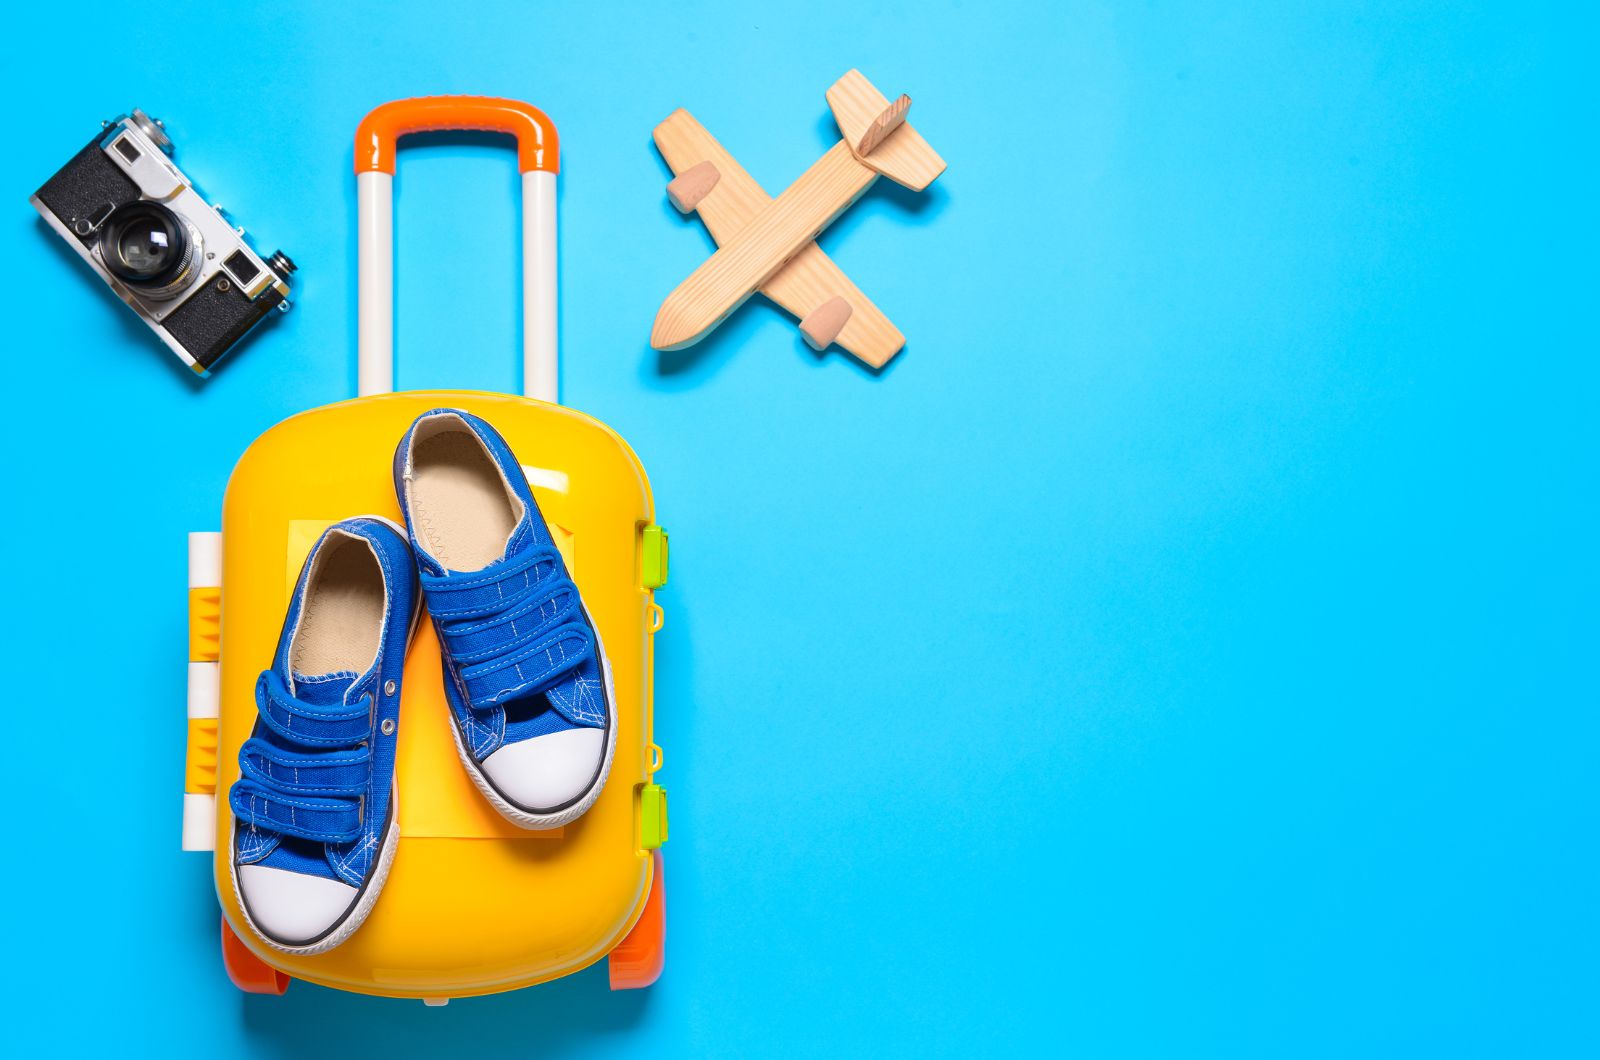 מדוע מזוודות טרולי הן האפשרות הטובה ביותר לילדים בדרכים?